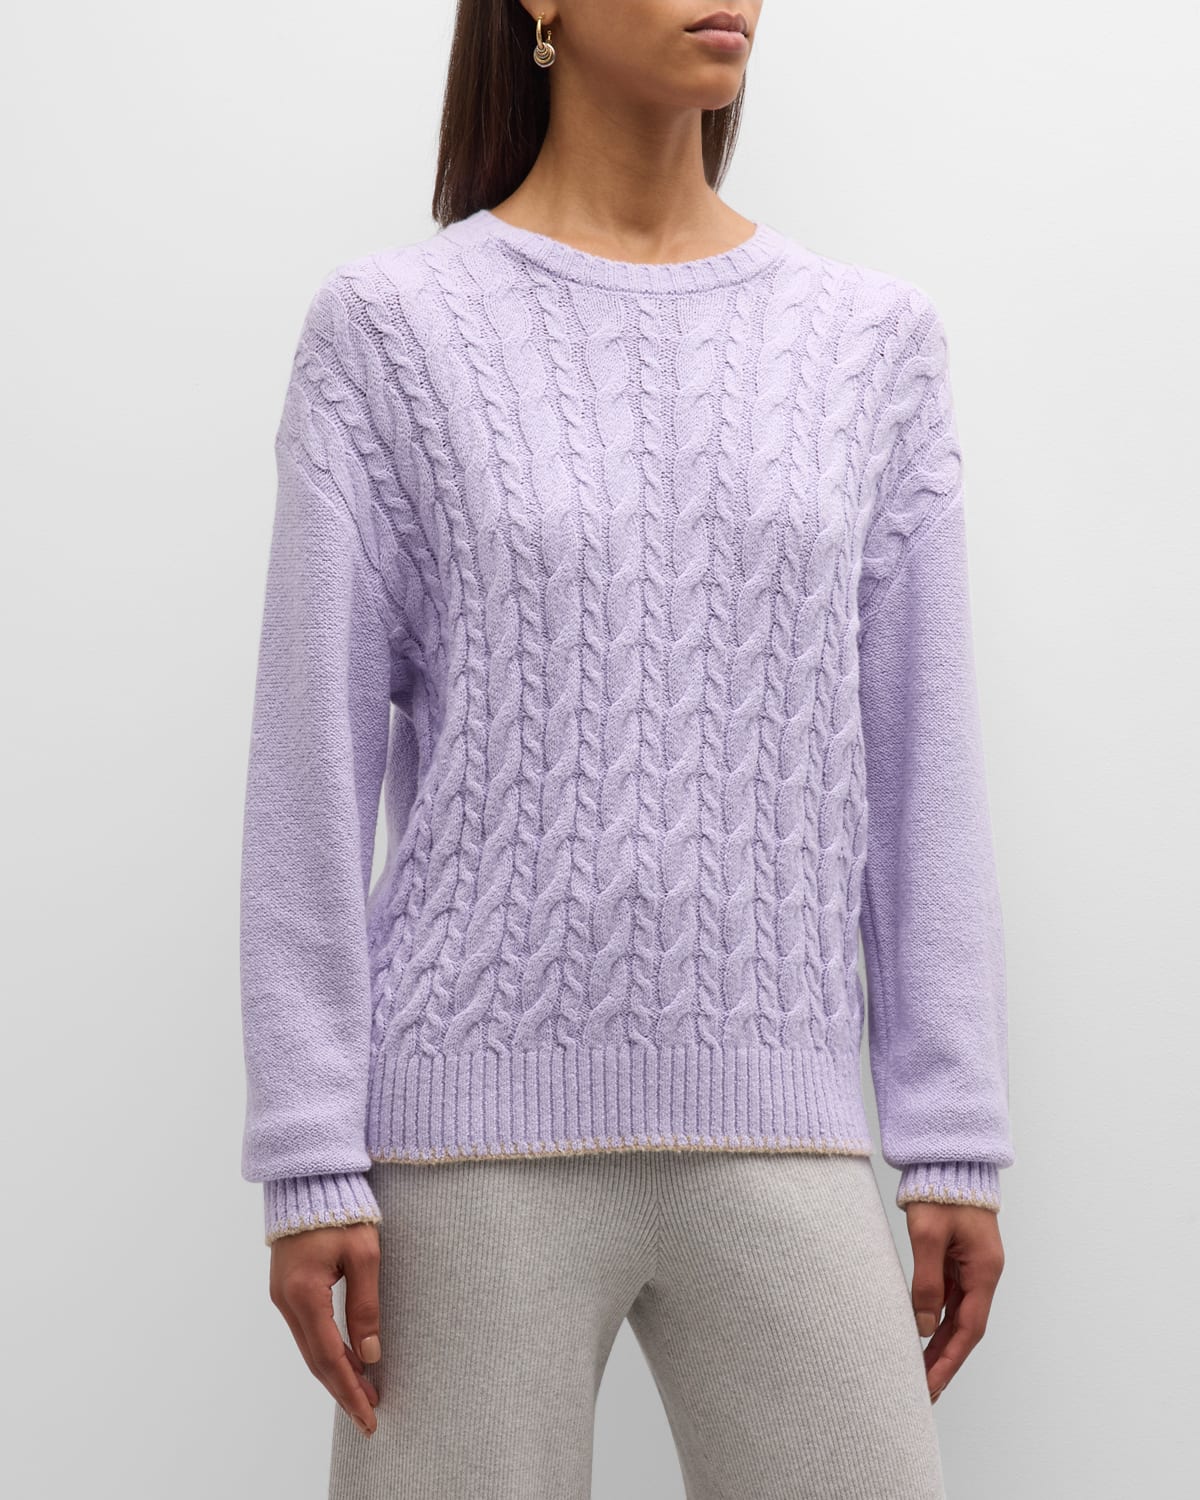 Cotton-Blend Cable Crewneck Sweater